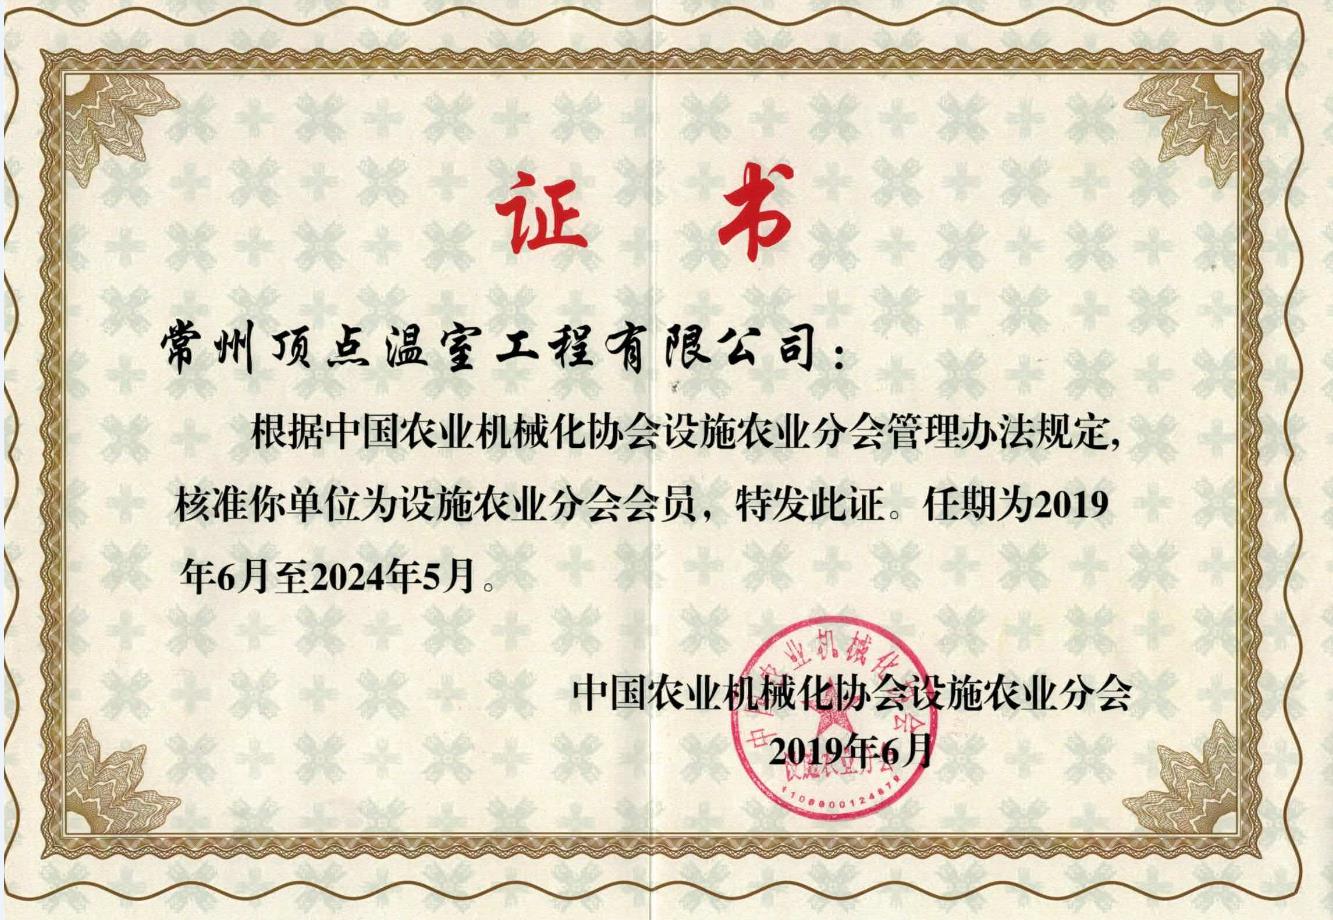 中国农业机械化协会设施农业分会会员证书